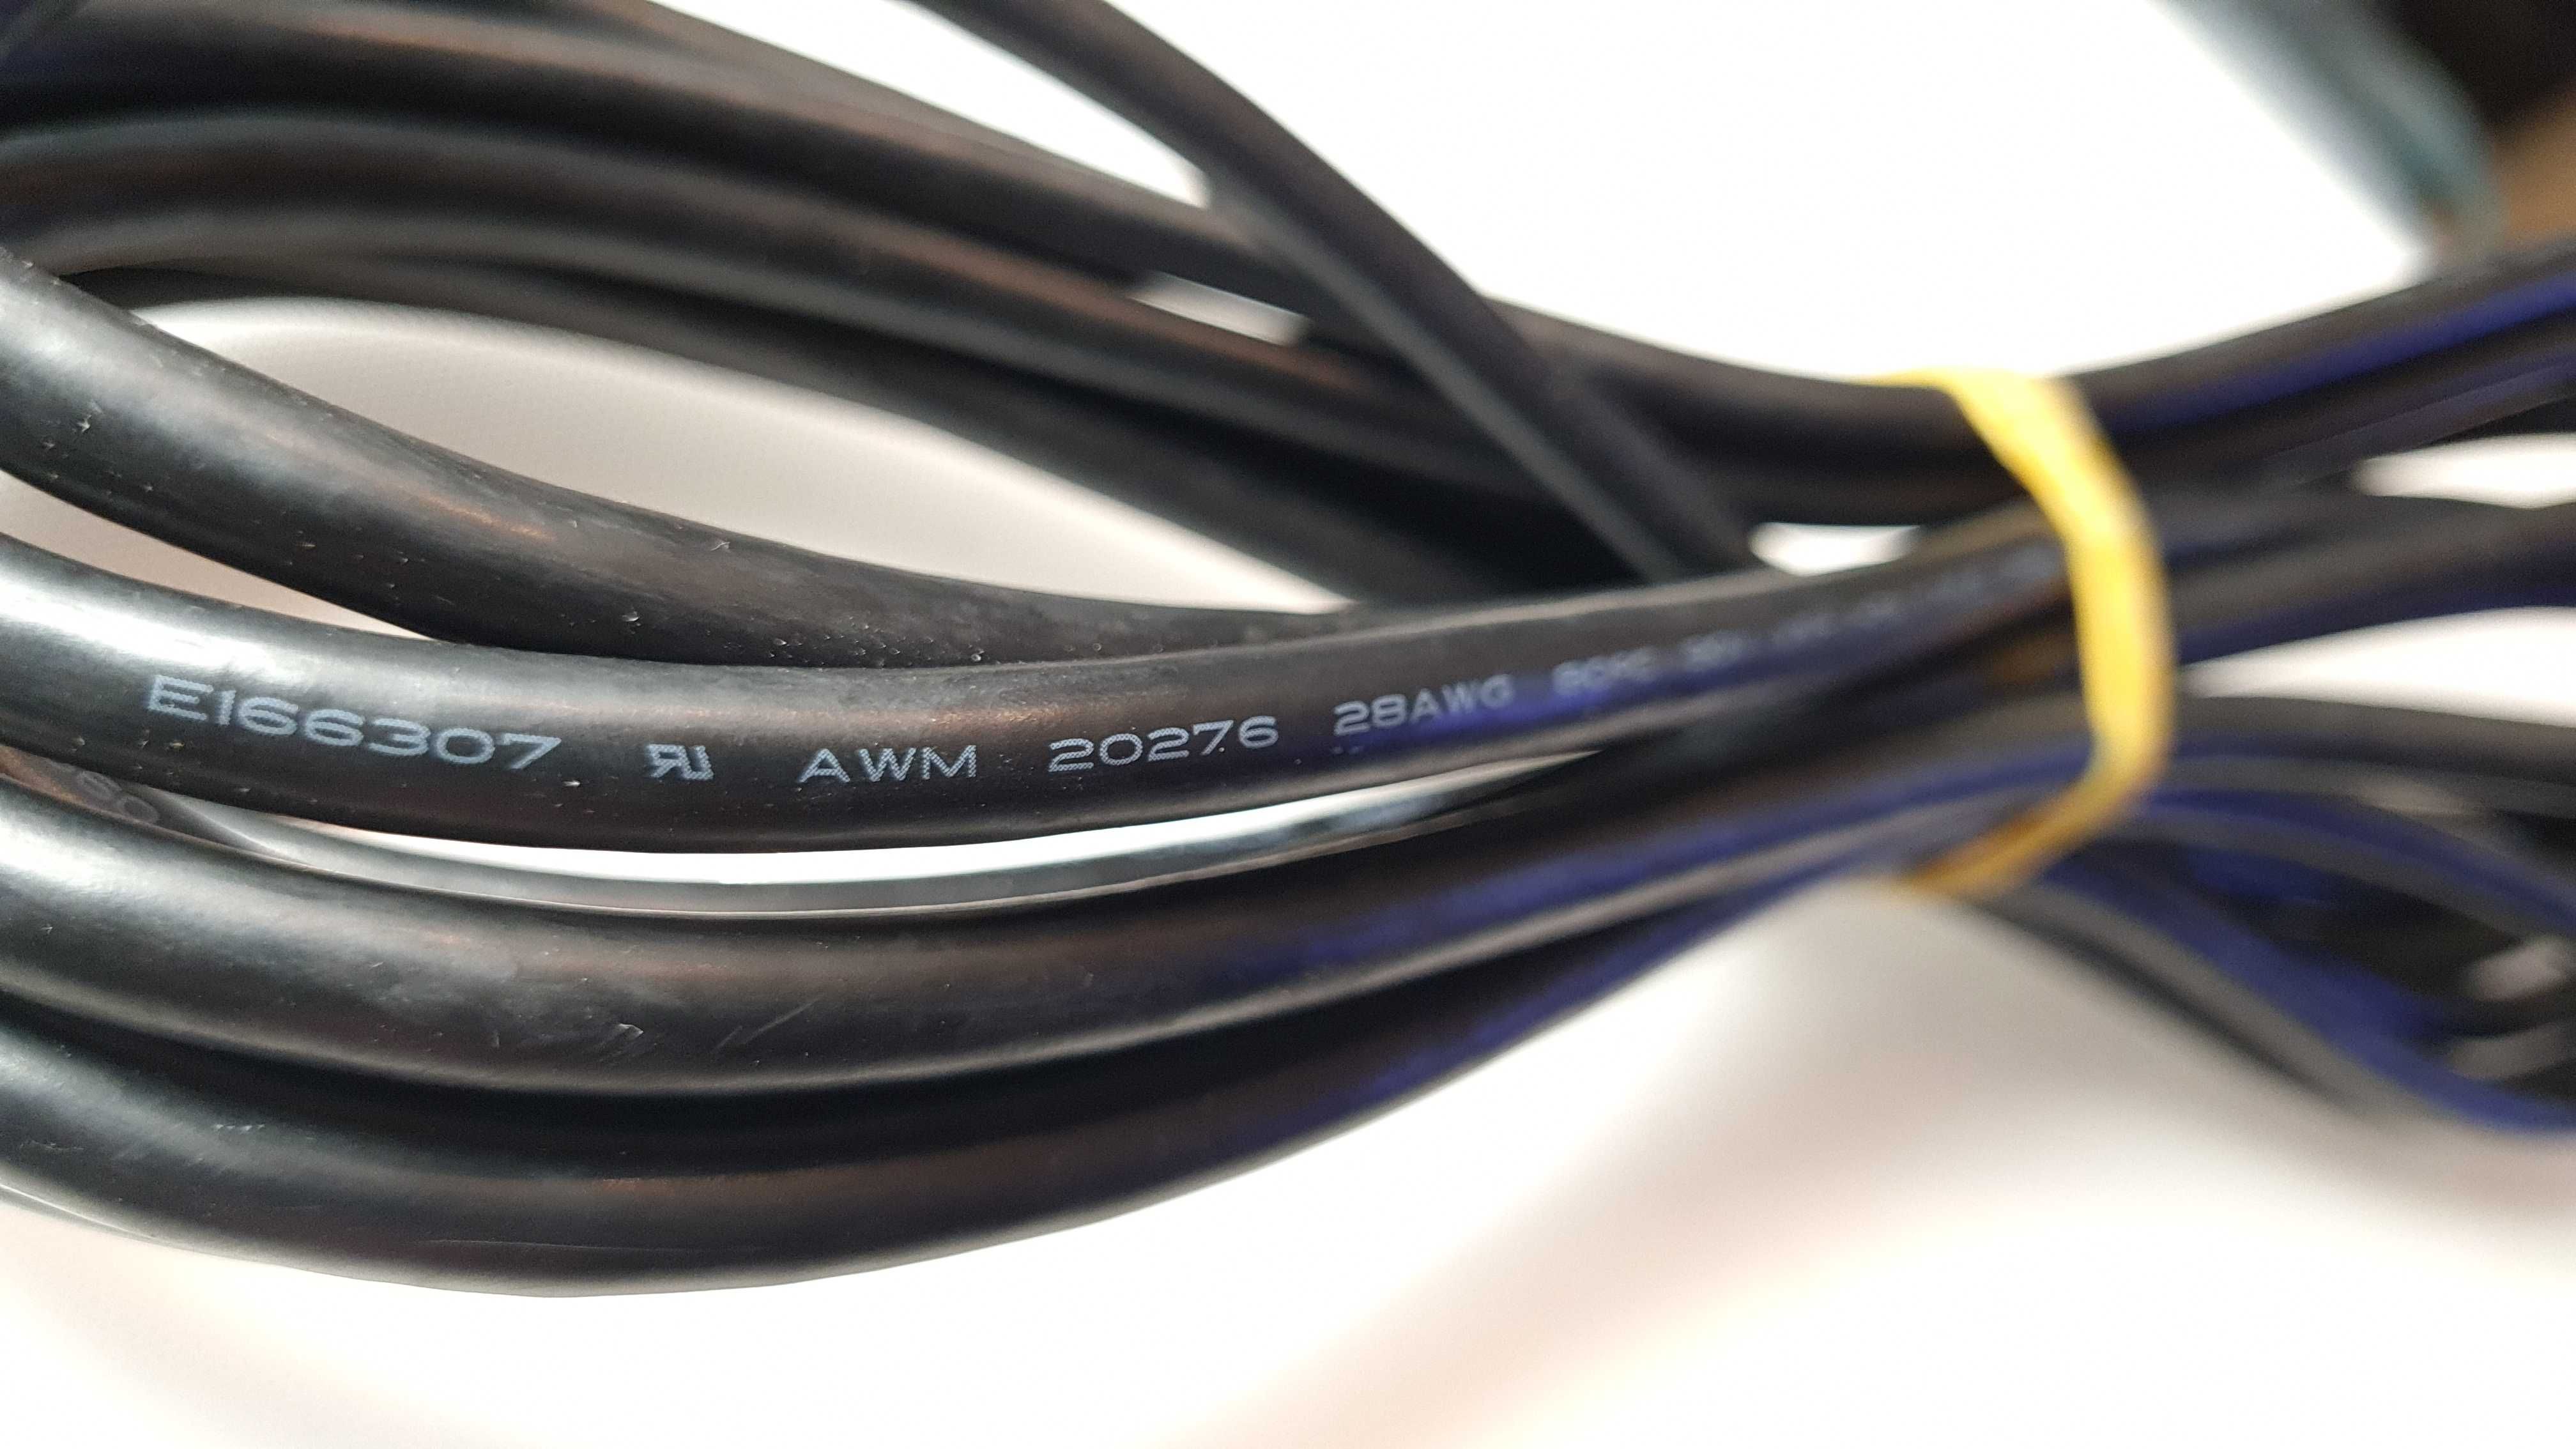 Kabel HDMI 5mb AWM Style 20276, E166307, 30V VW-1